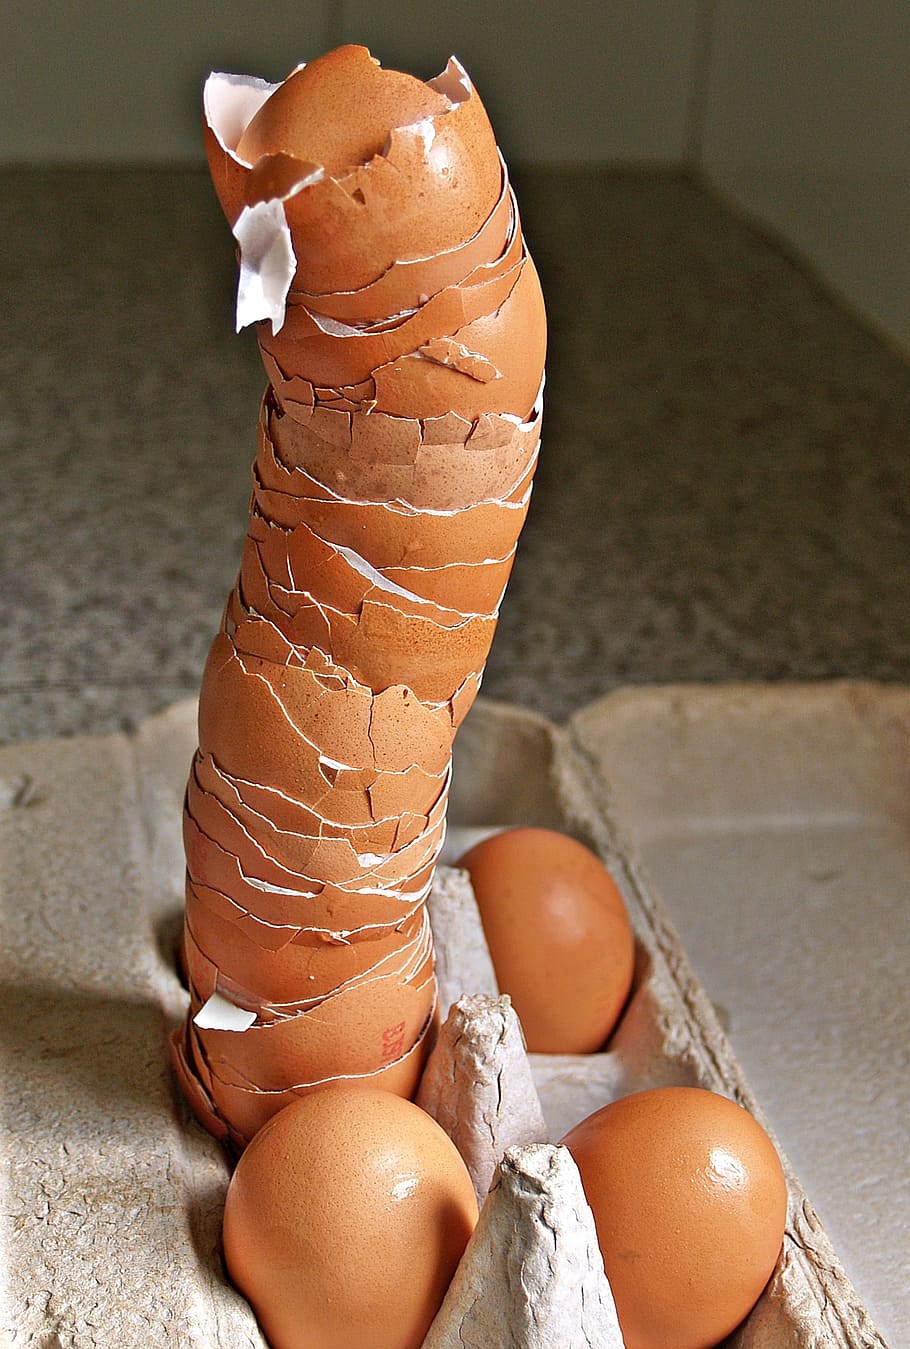 empty, chicken egg shells, gray, tray, eggshells, tall, pile, broken, eggs, egg carton